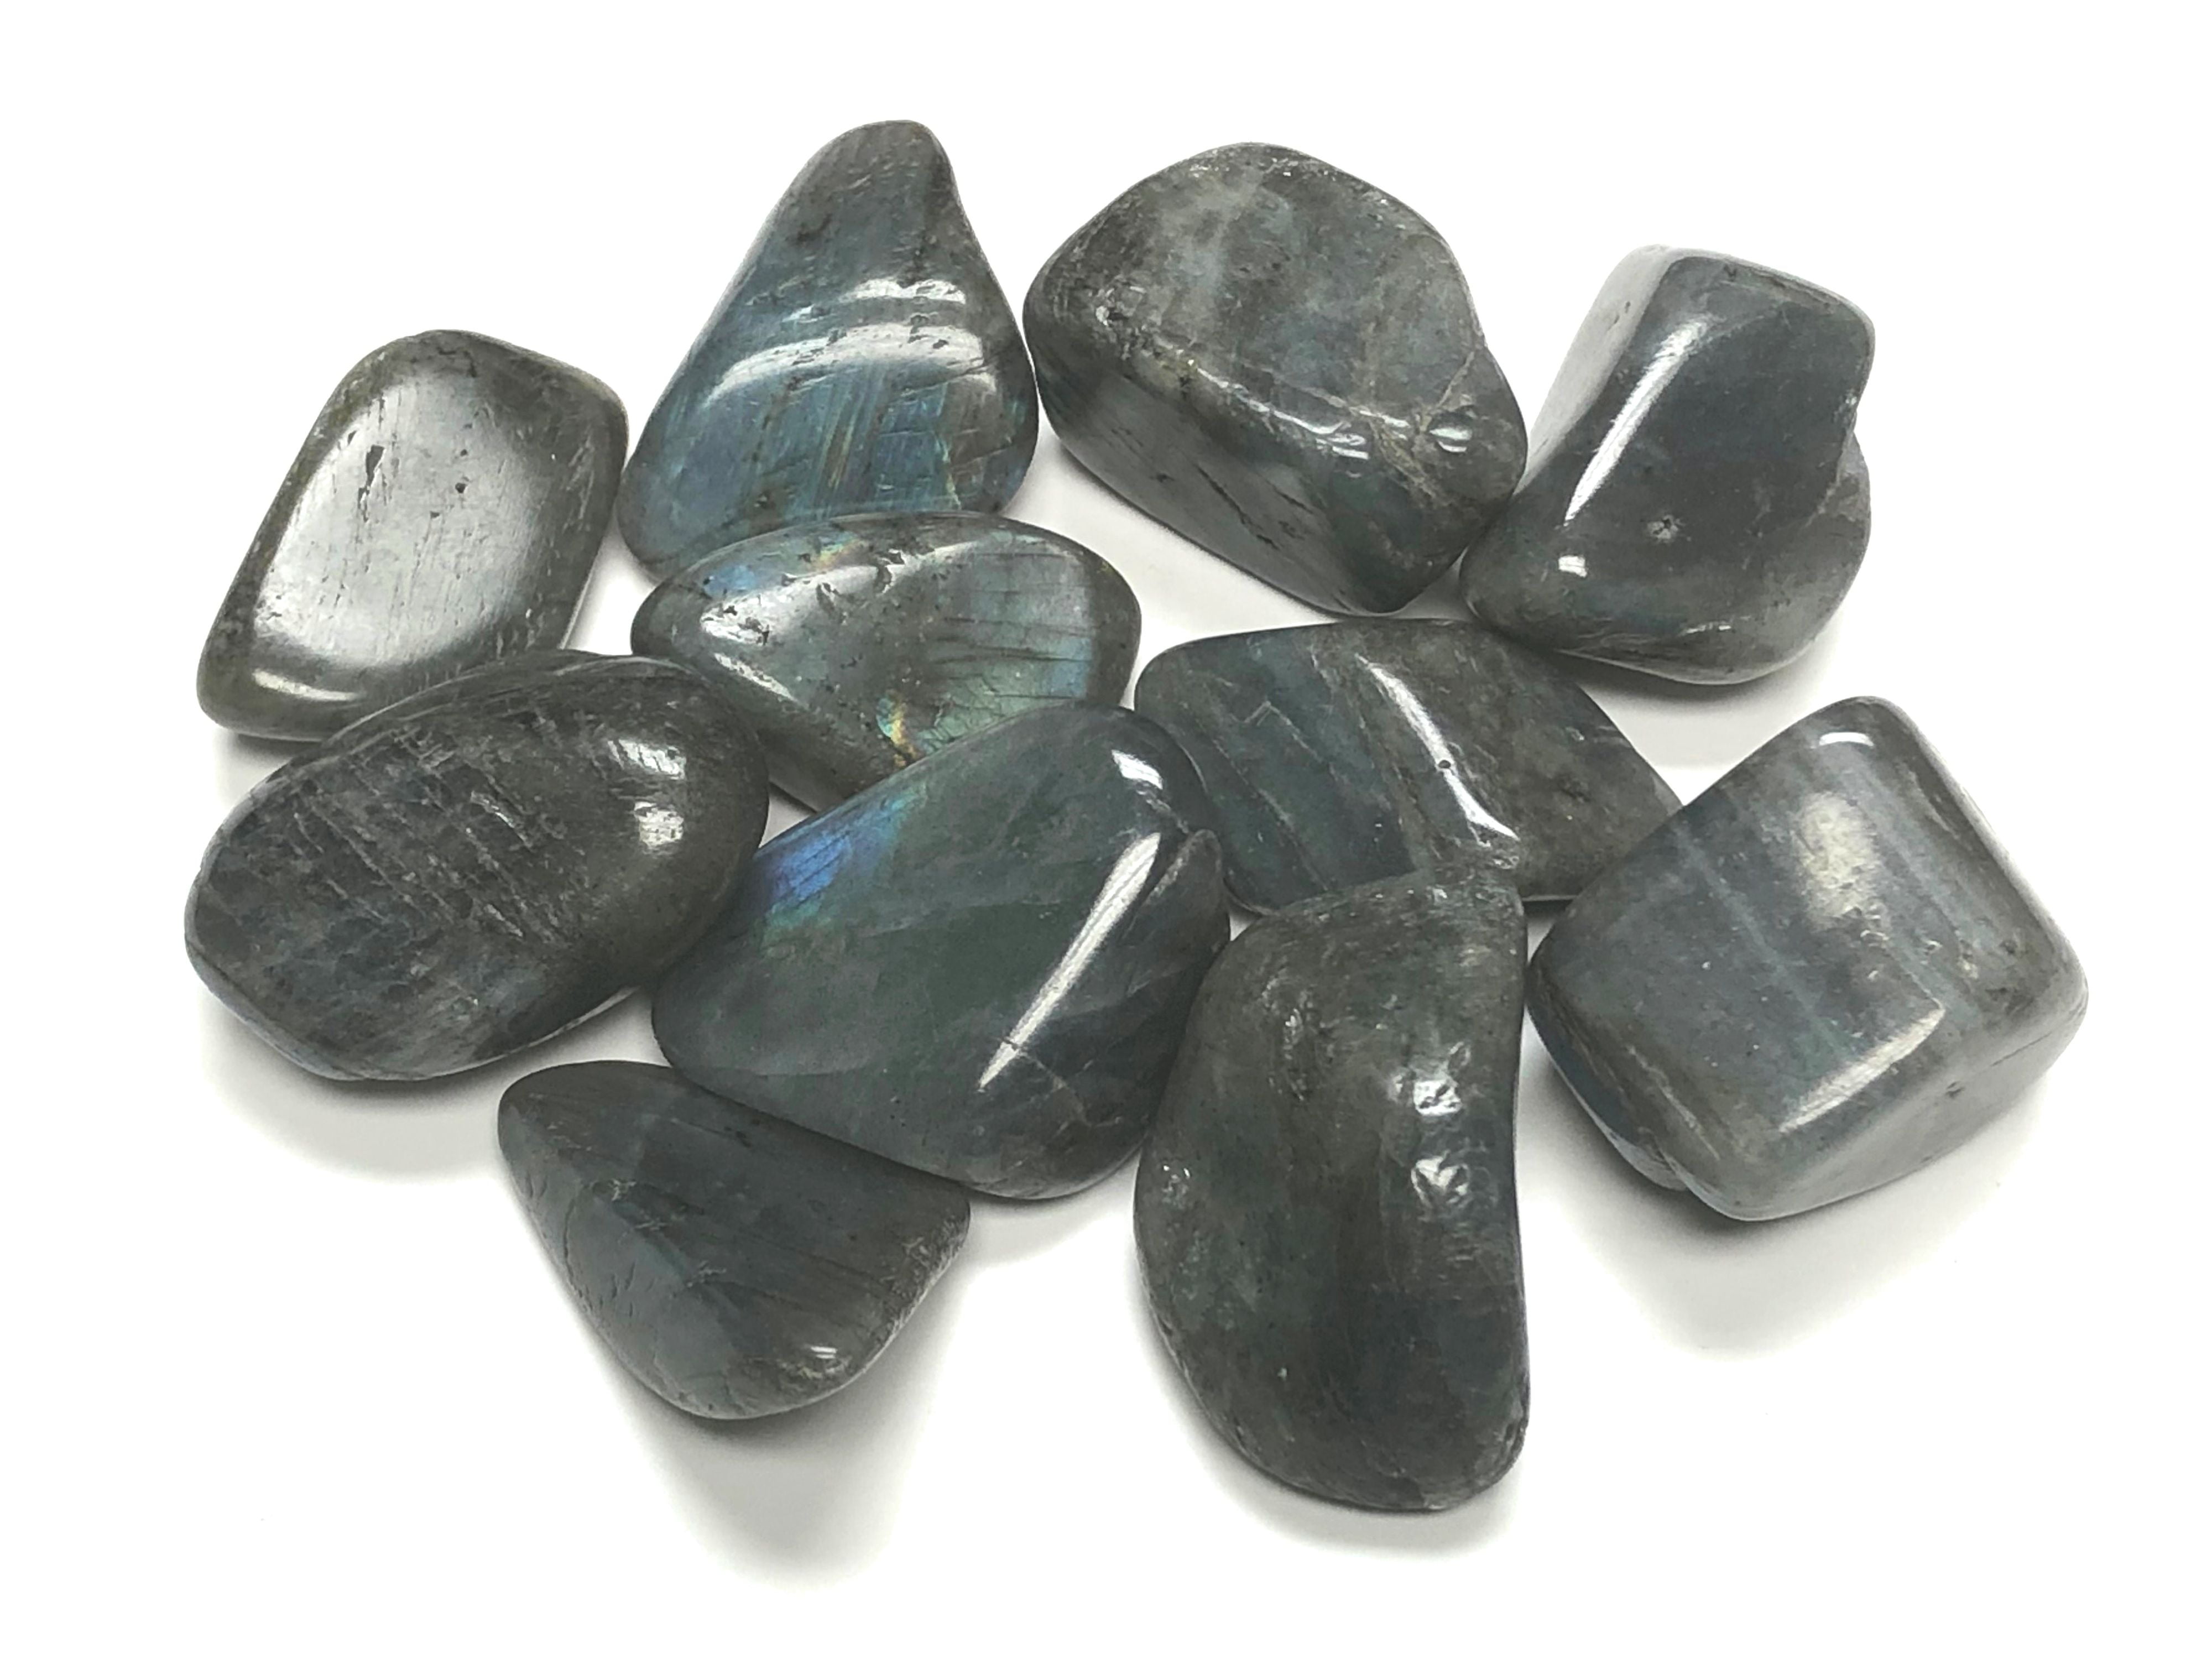 Rough Labradorite 11 lb Lot Zentron™ Crystals 